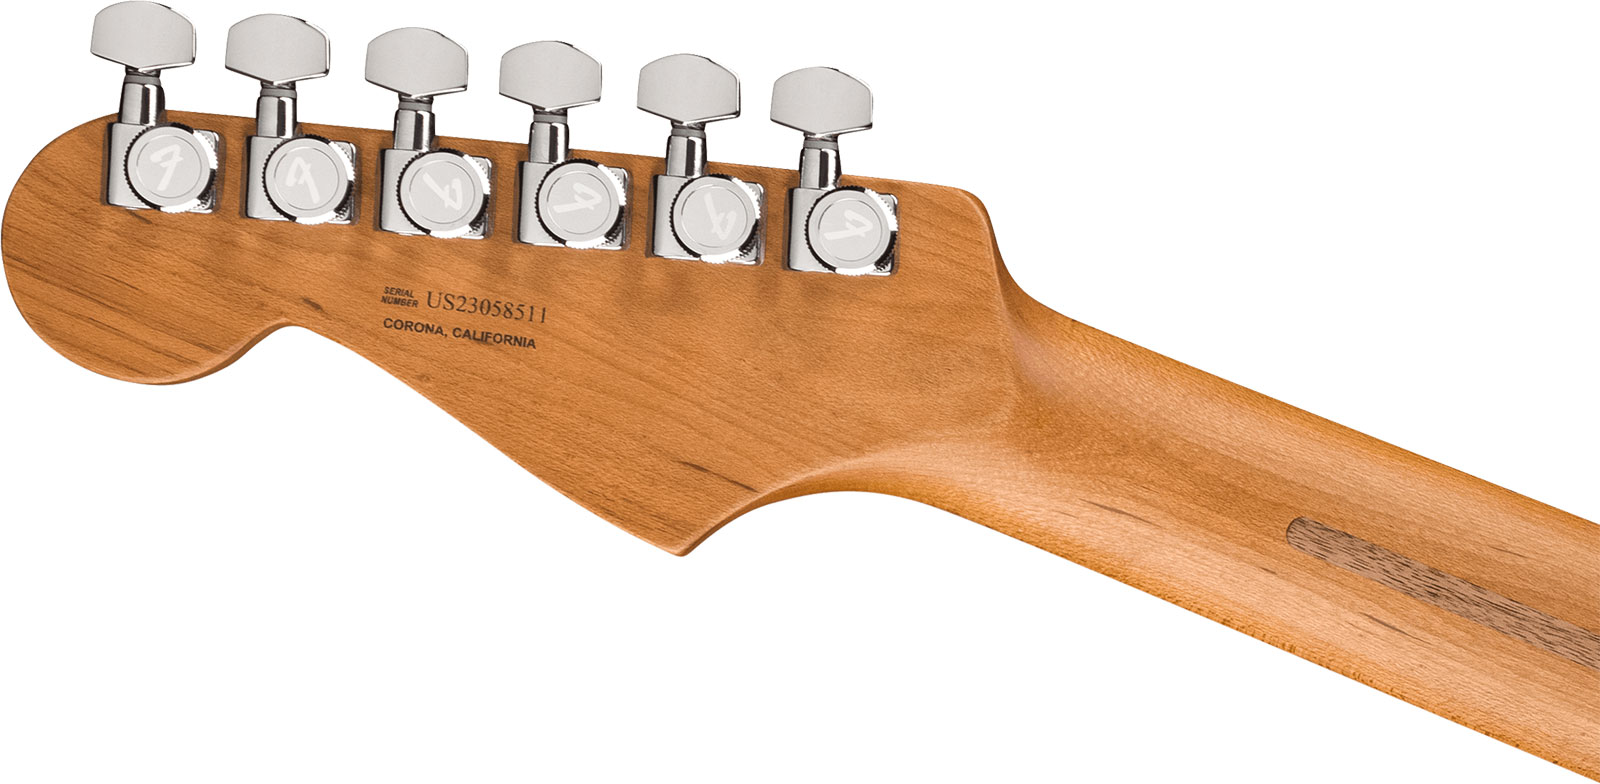 Fender Strat 70th Anniversary American Ultra Ltd Usa Hss Trem Mn - Amethyst - Elektrische gitaar in Str-vorm - Variation 3